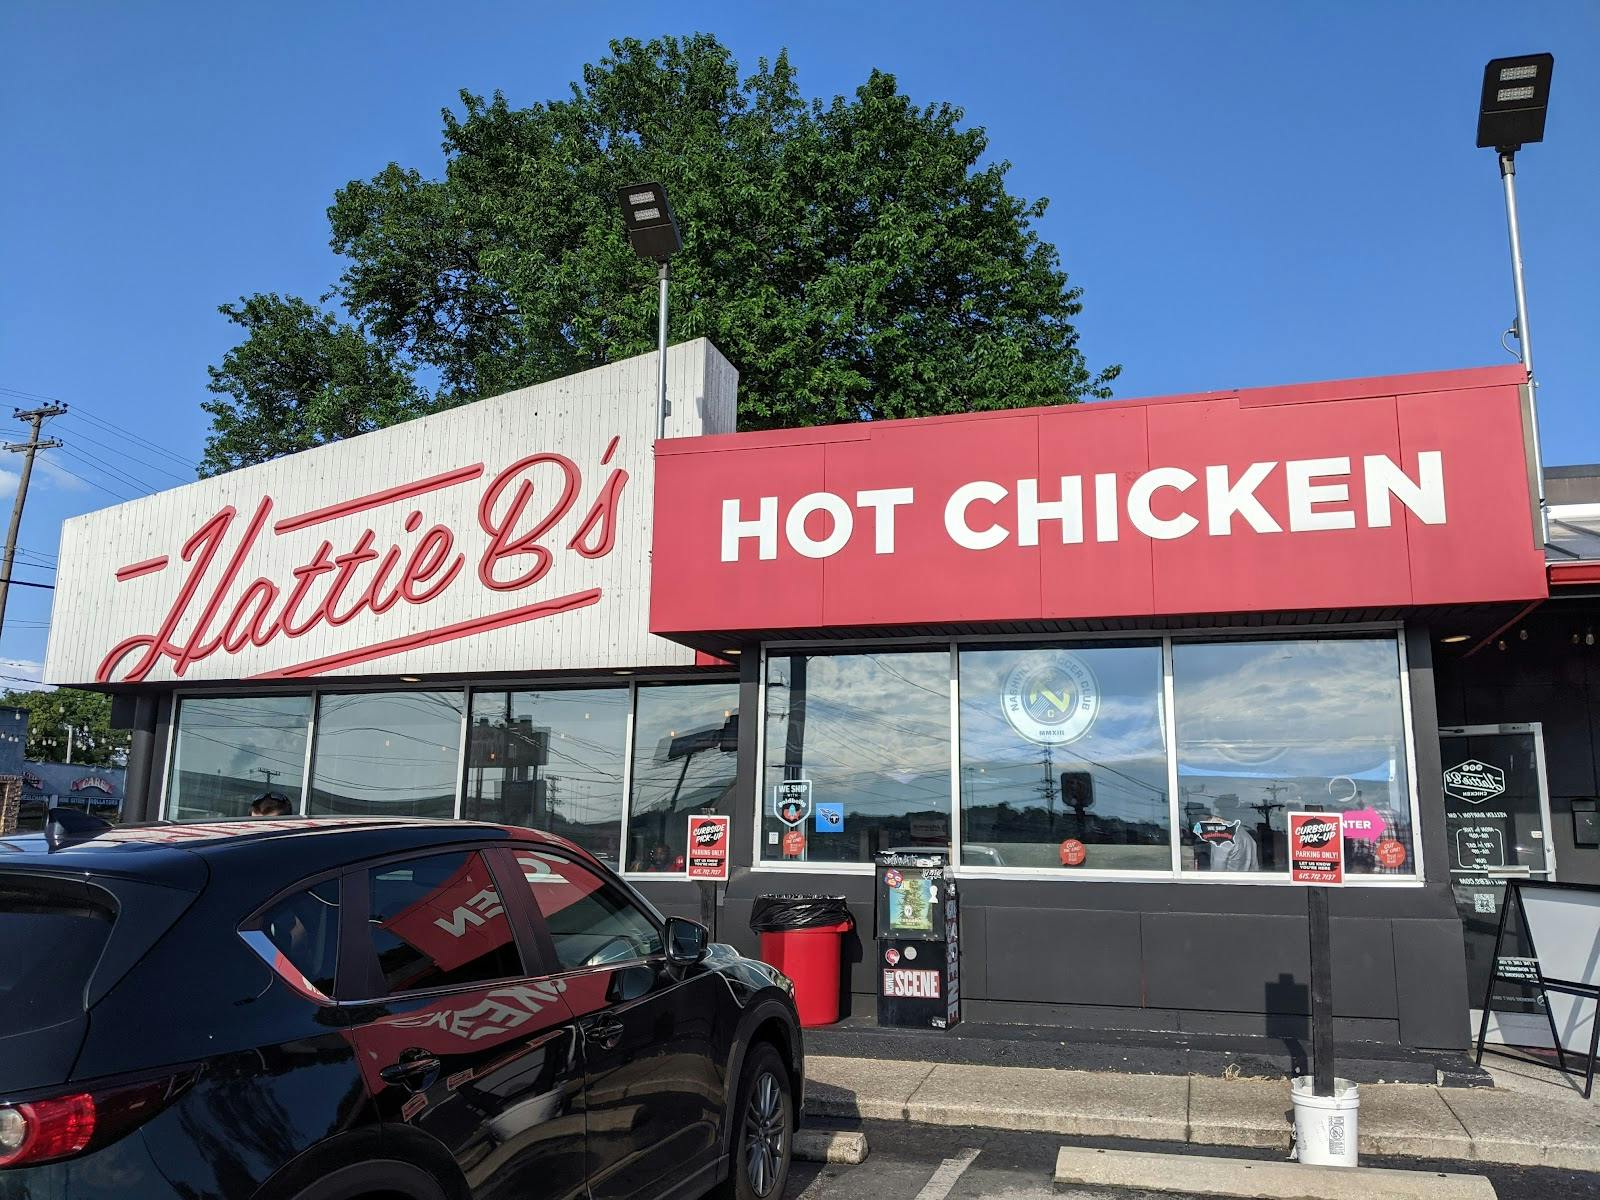 Image - Hattie B's Hot Chicken - West Nashville, TN